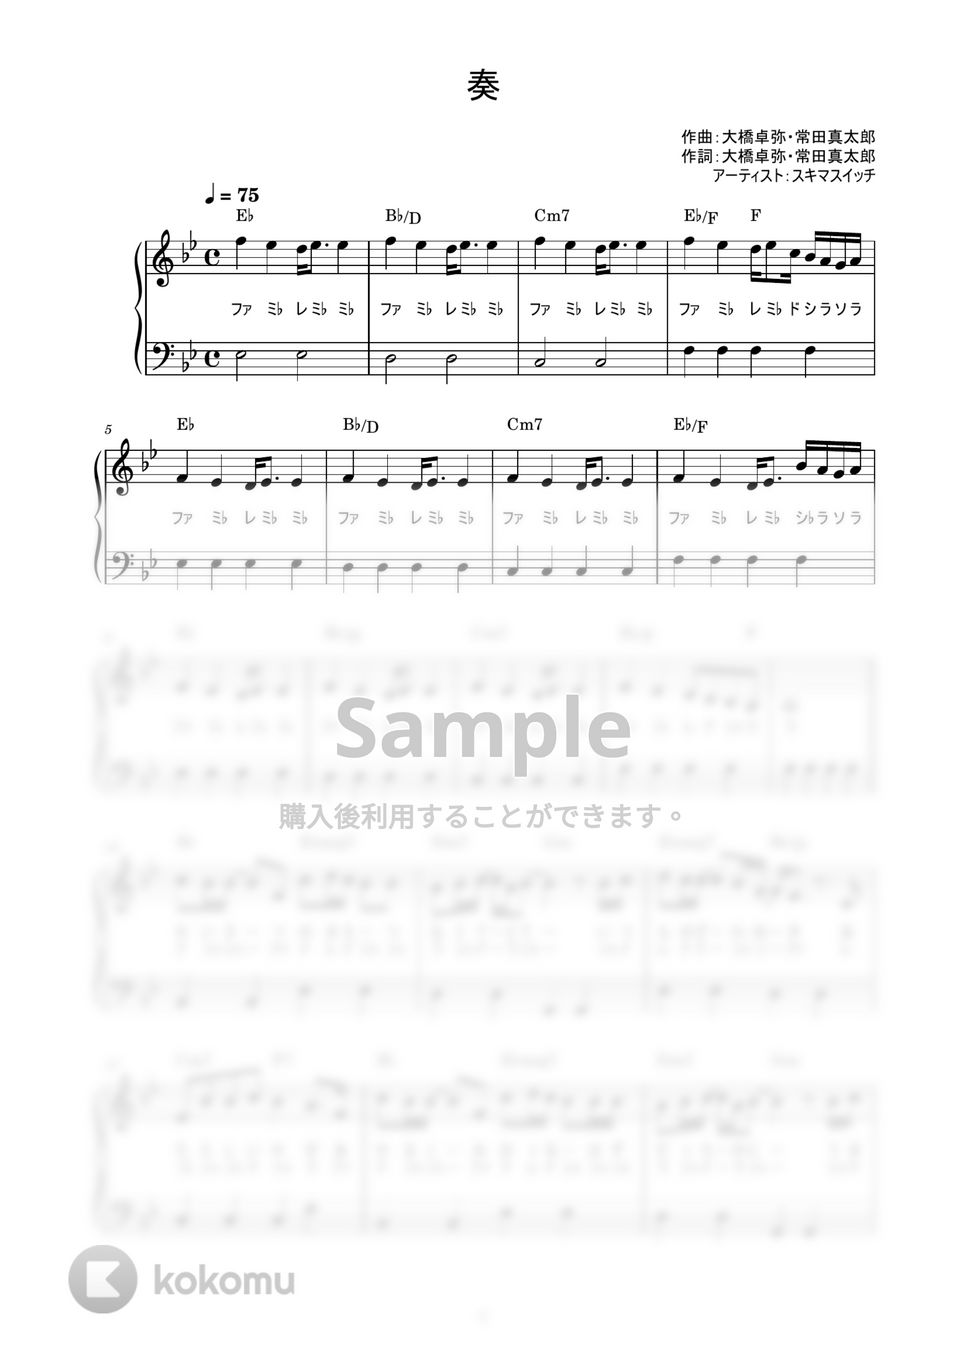 スキマスイッチ - 奏 (かんたん / 歌詞付き / ドレミ付き / 初心者) by piano.tokyo